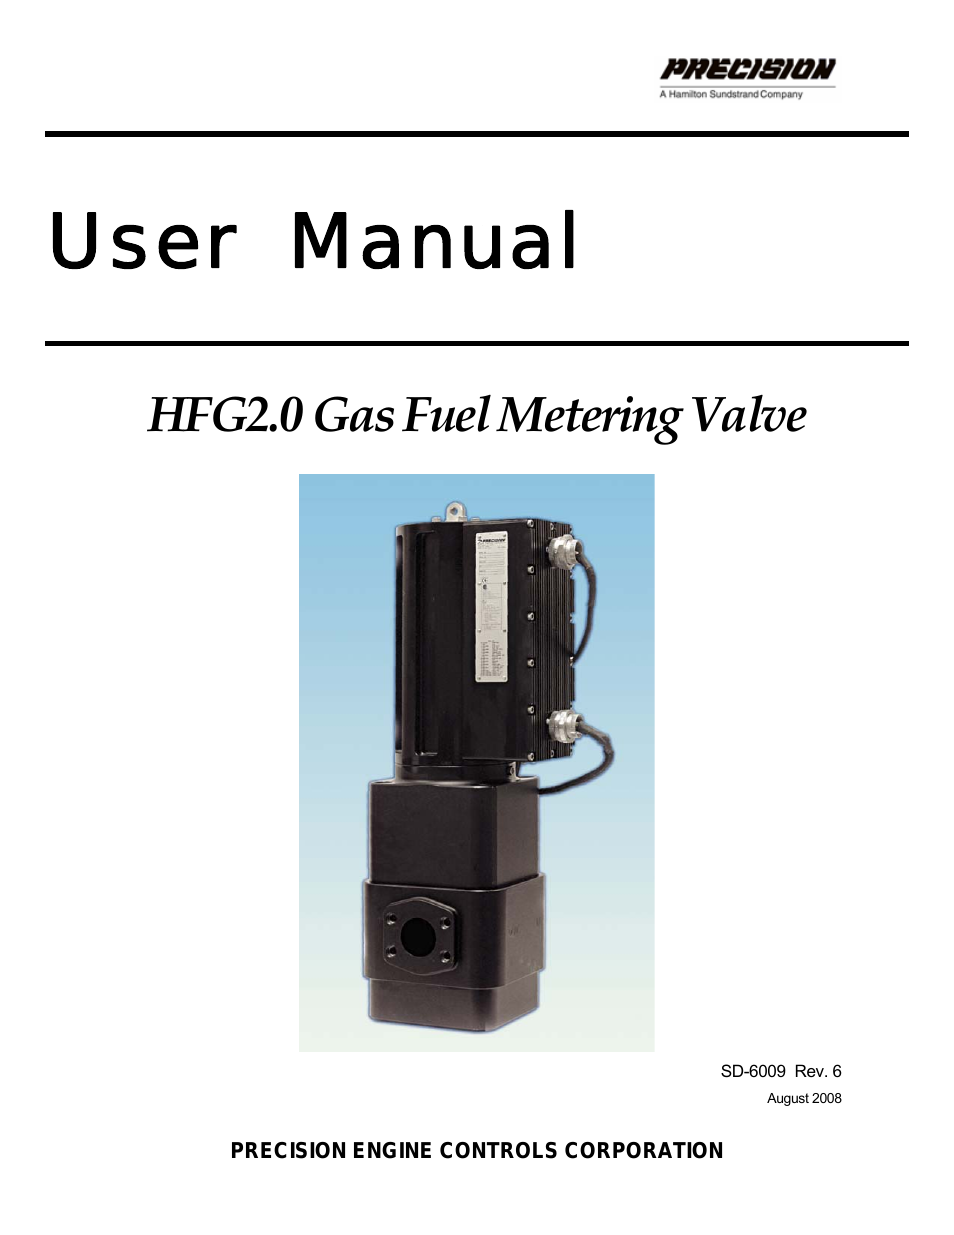 Gas Fuel Metering Valve HFG2.0